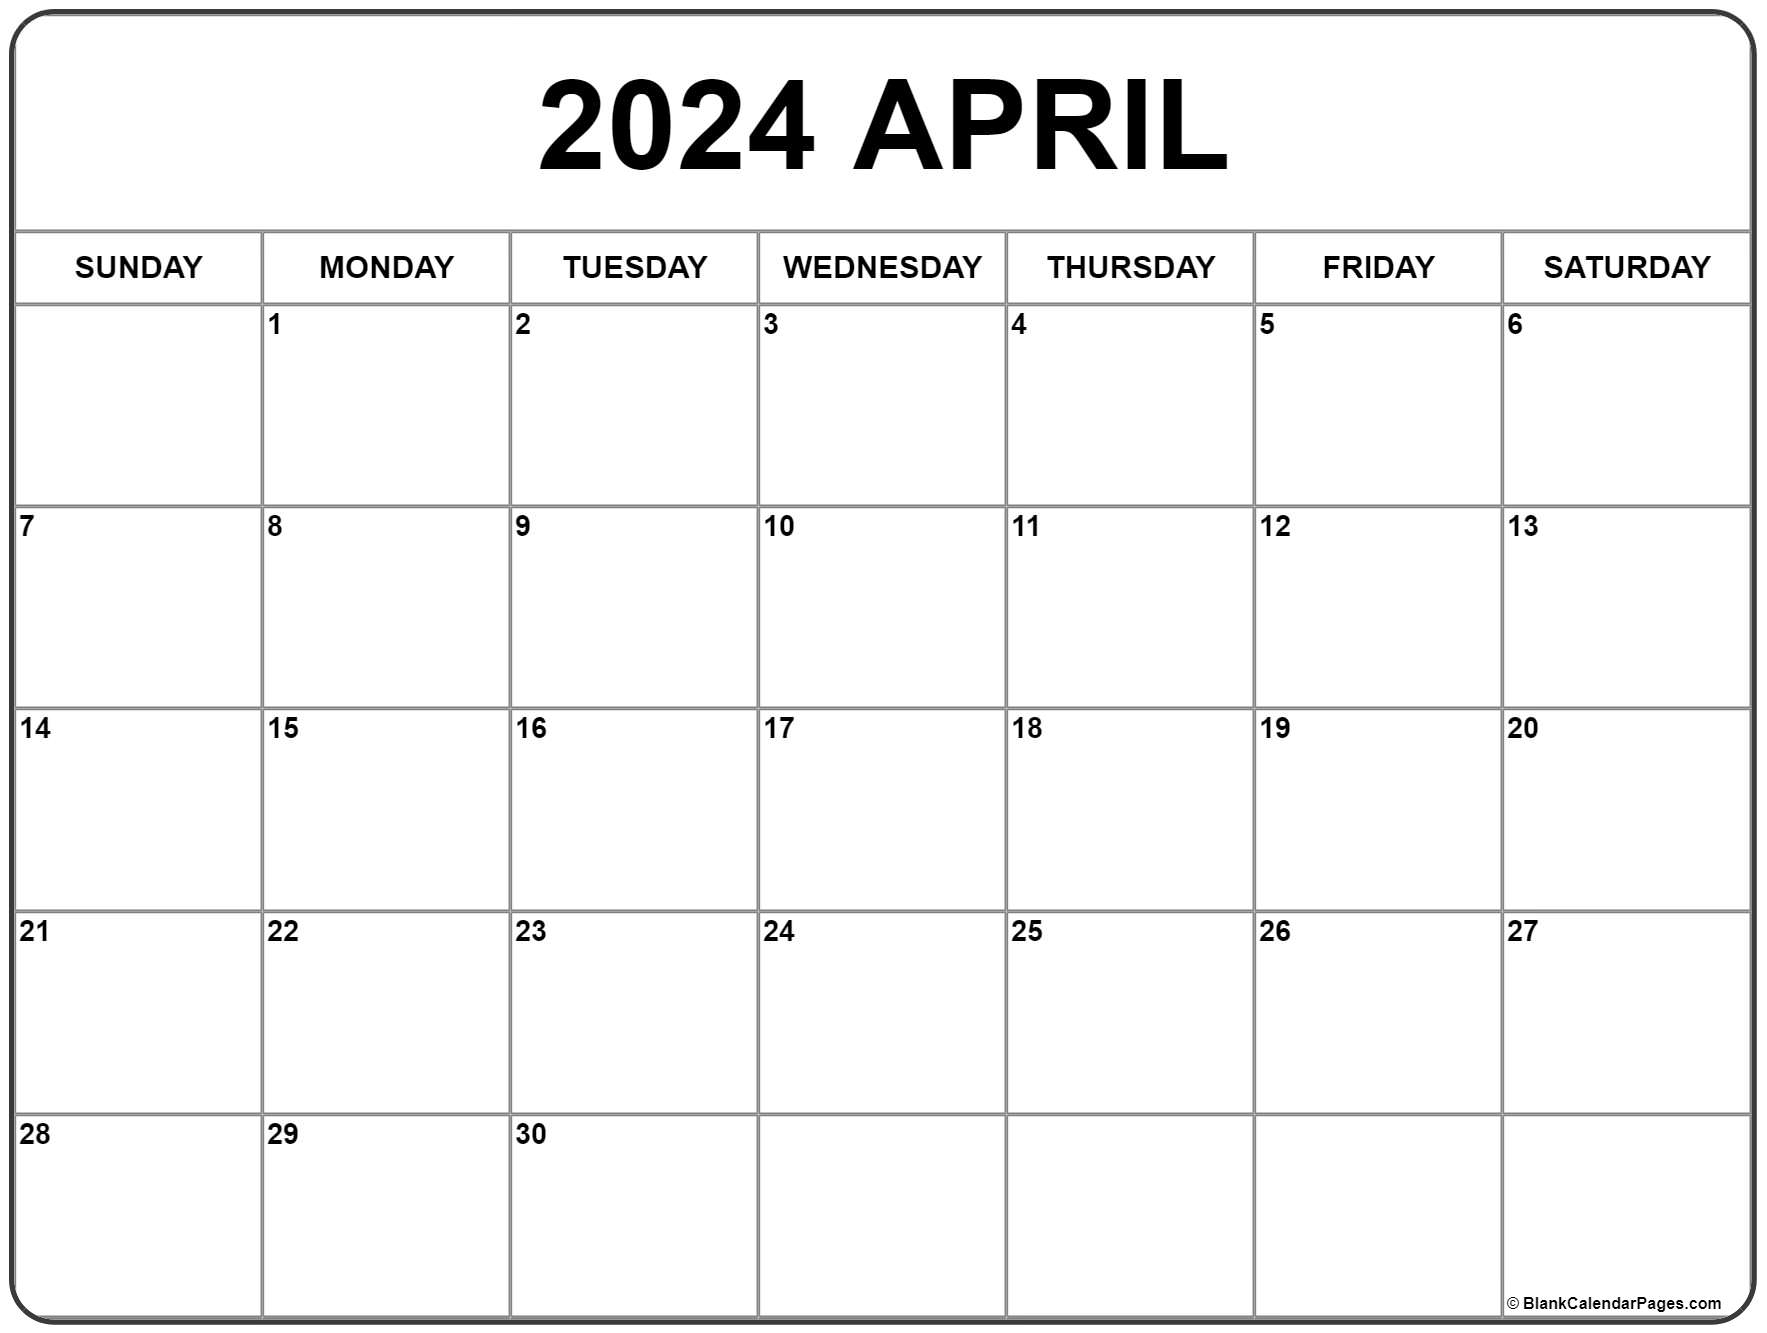 April 2024 Calendar | Free Printable Calendar inside Show Me A Calendar Of April 2024